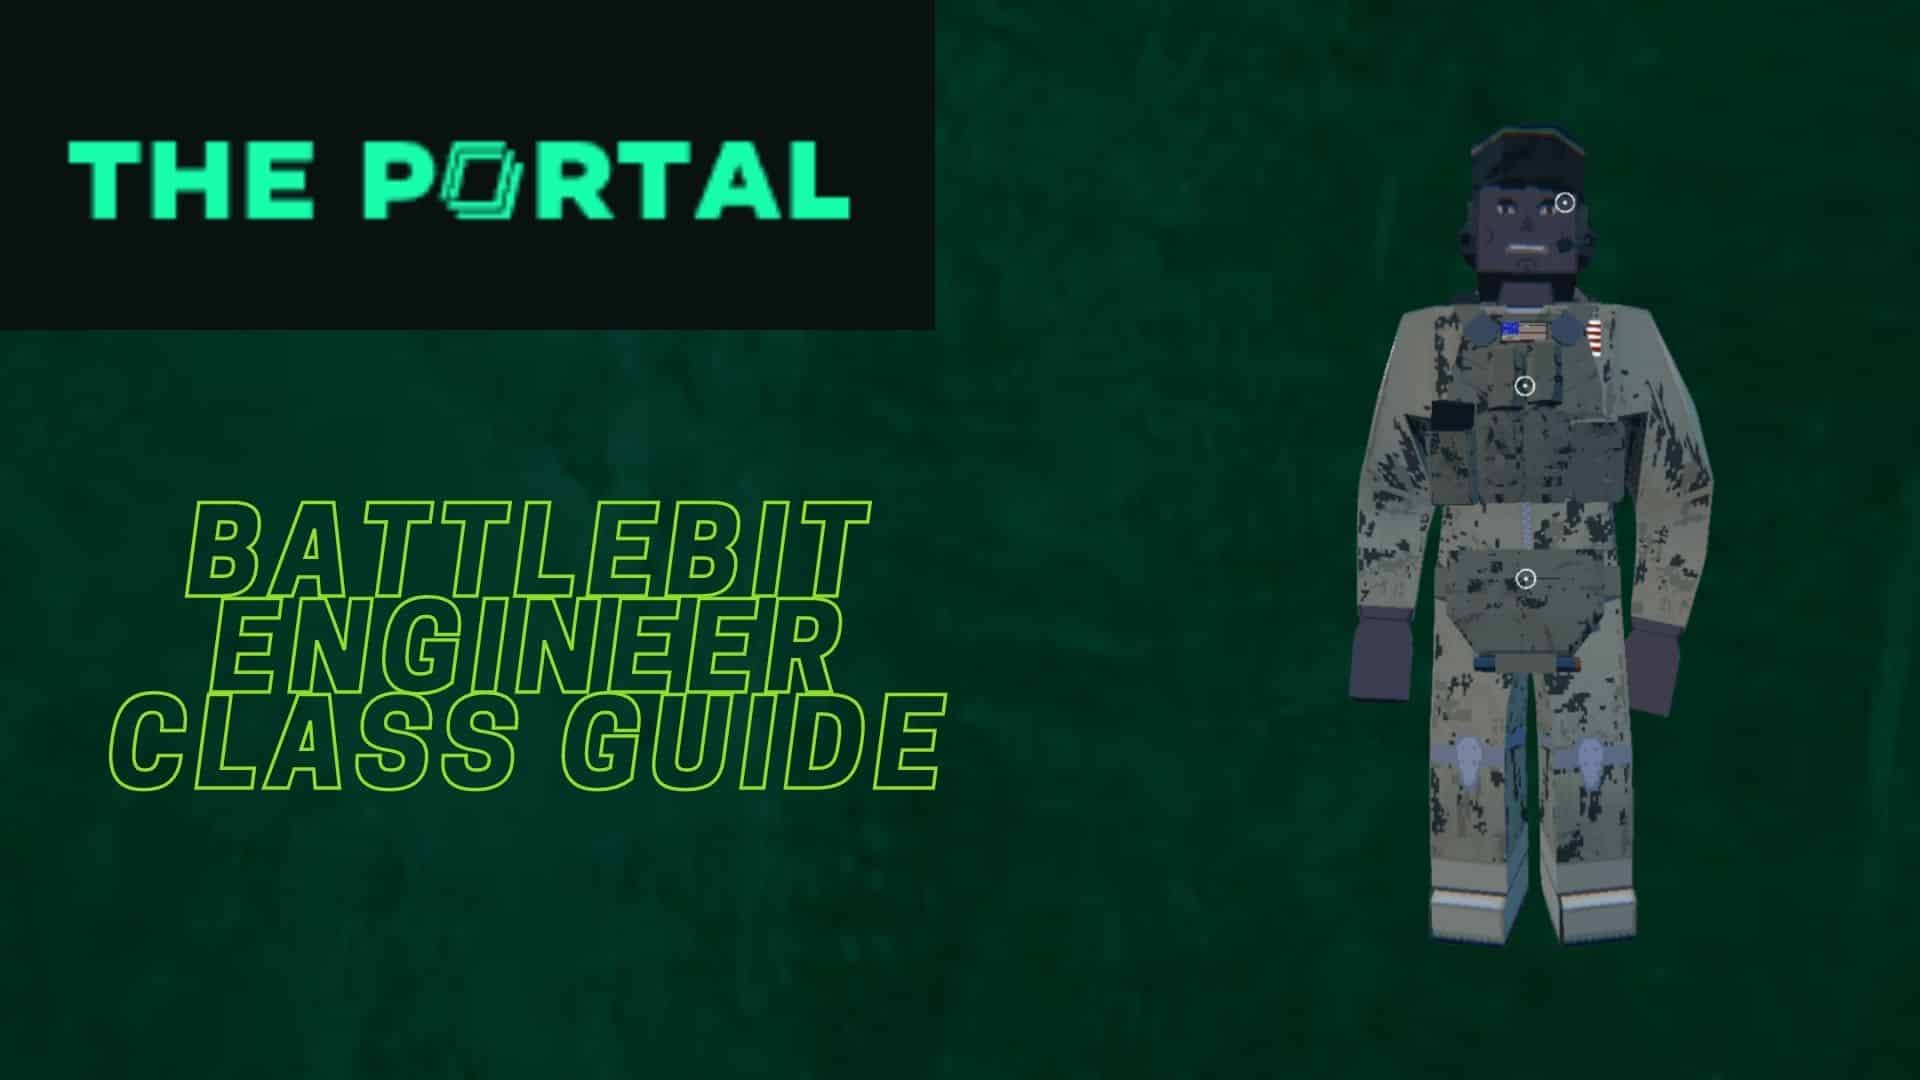 BattleBit Engineer Class Guide